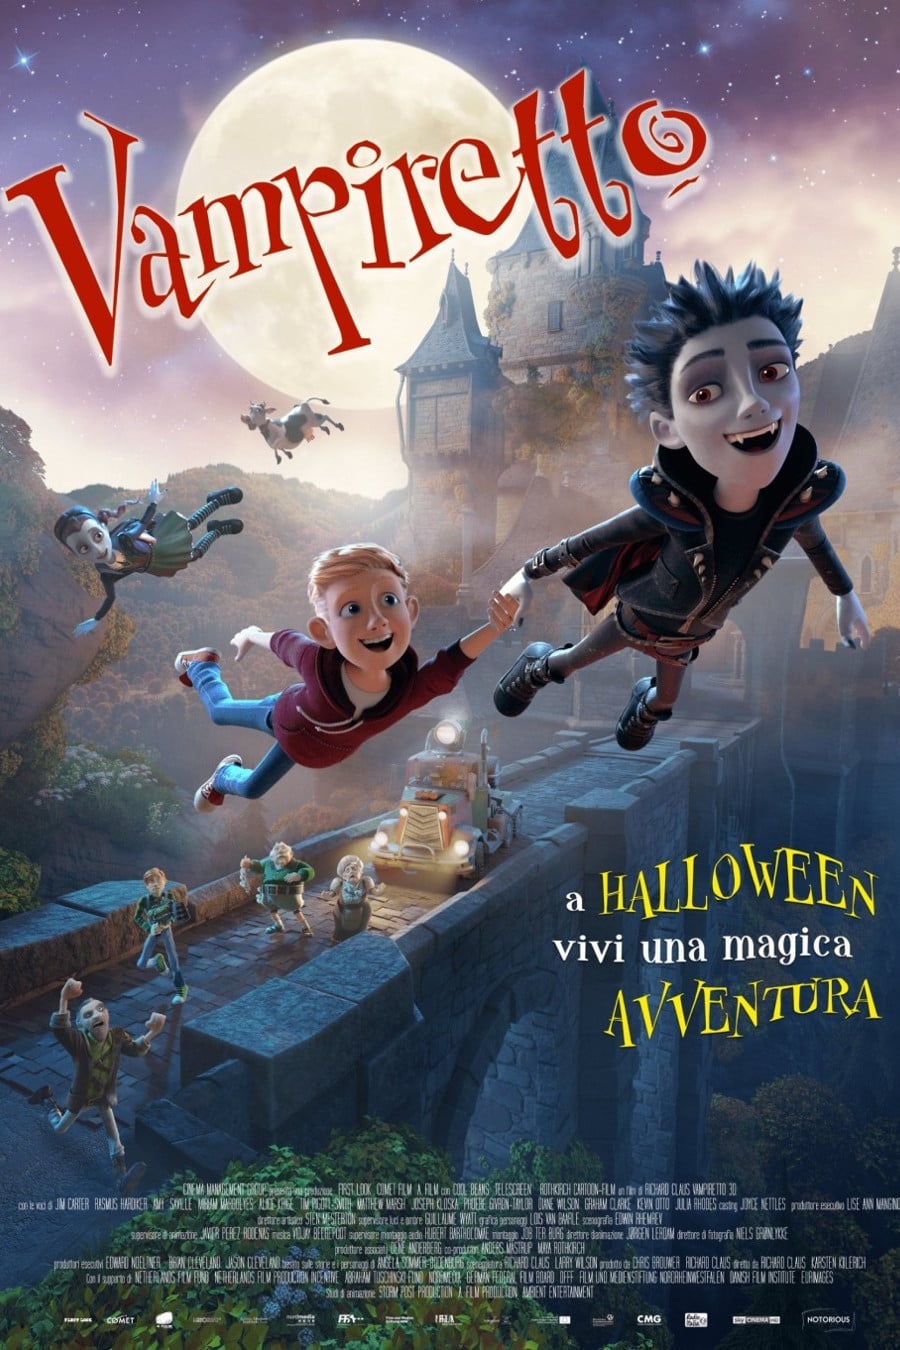 Vampiretto film